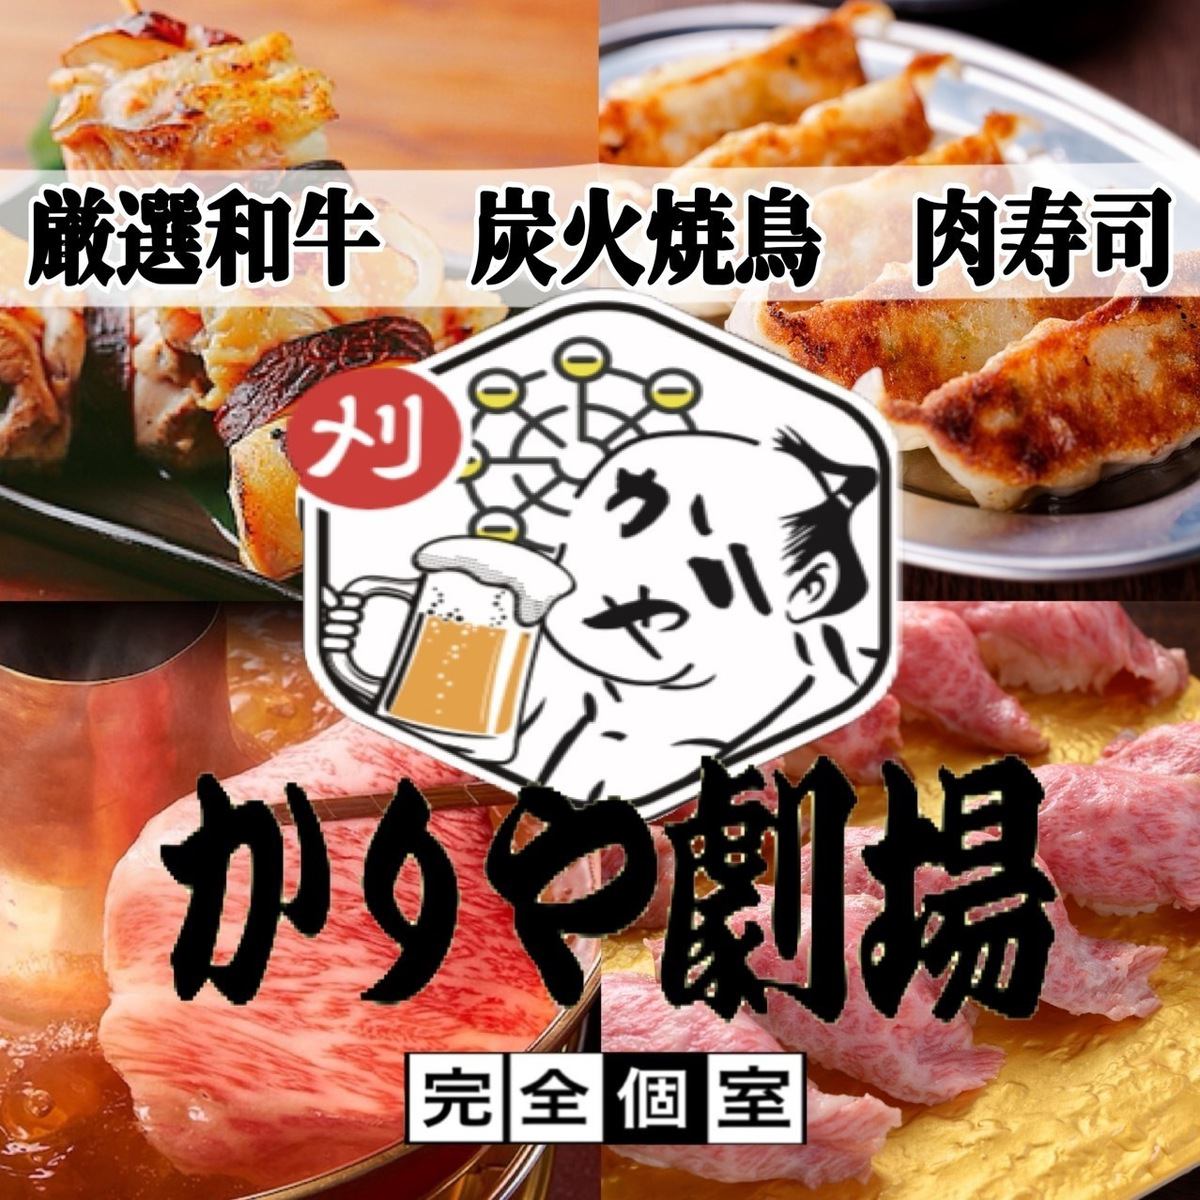 从刈谷站步行1分钟 烤鸡肉串寿司无限畅饮套餐♪ 3小时（共200种）3,000日元～